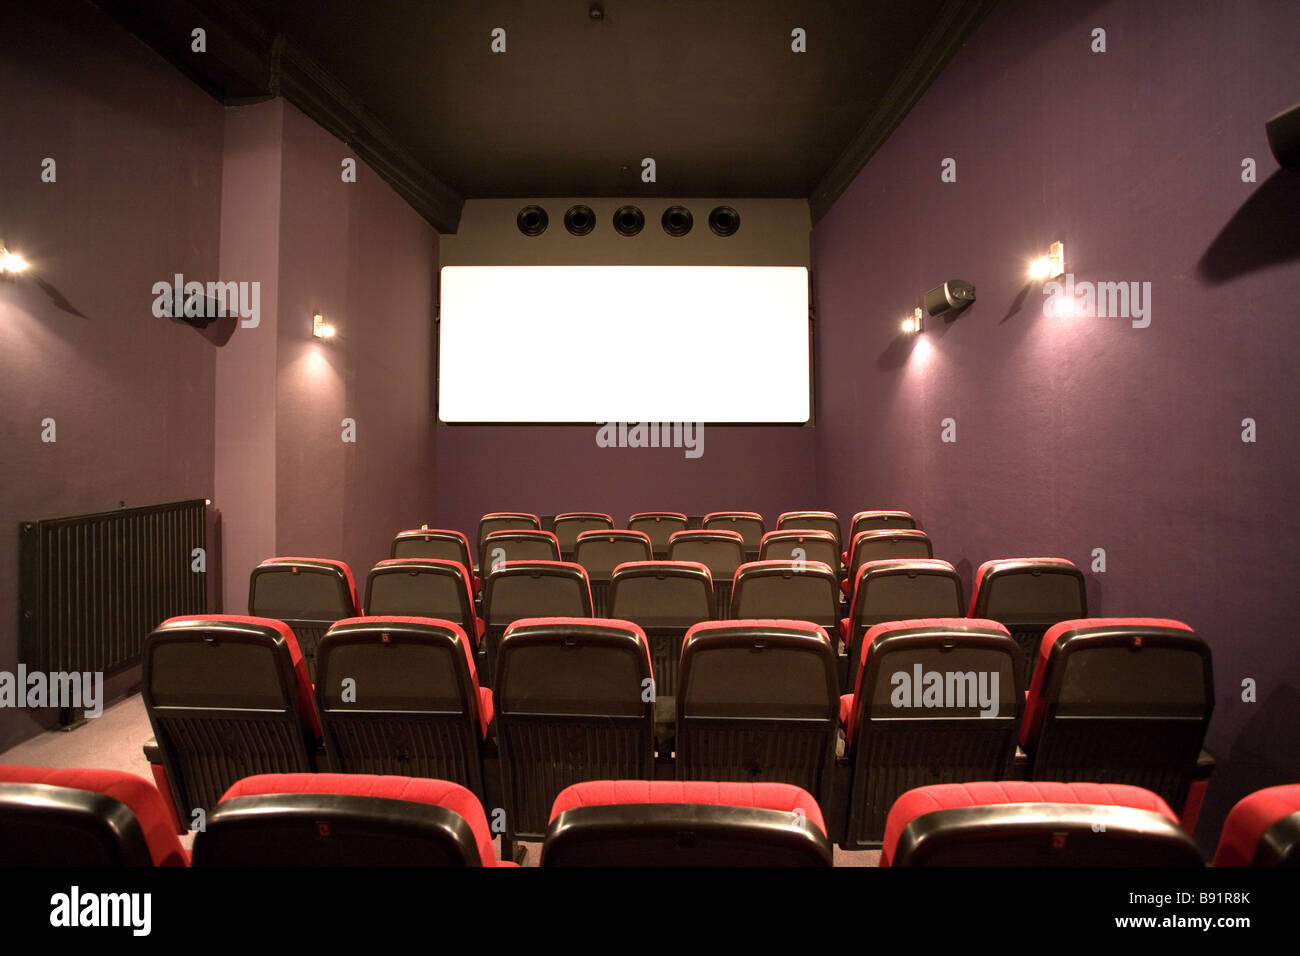 empty cinema auditorium Stock Photo